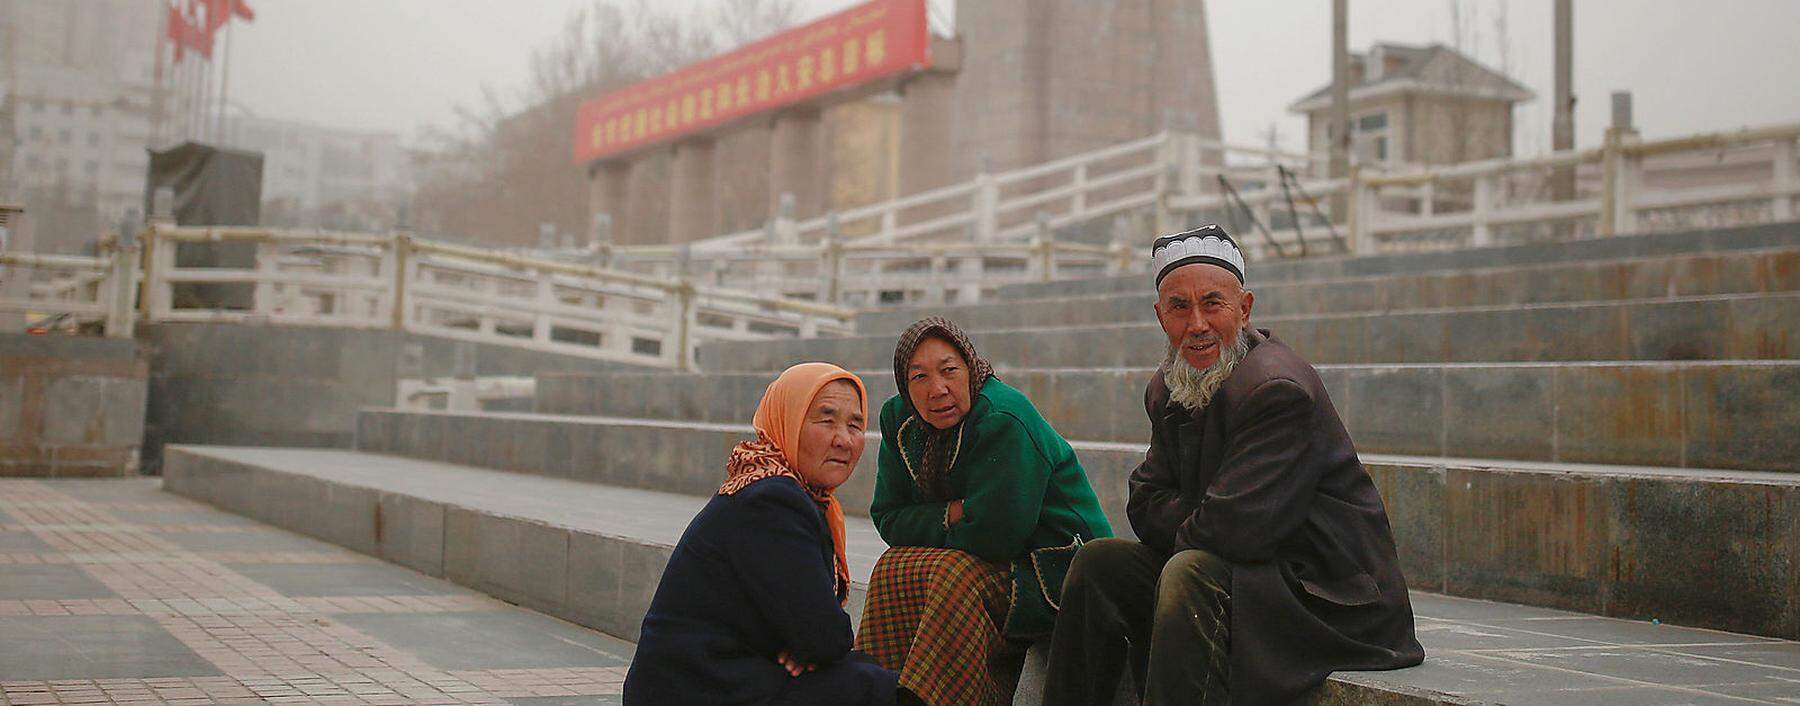  Besonders ins Visier nimmt Chinas Regime die muslimischen Uiguren in der Provinz Xinjiang, auch beim Aufbau einer DNA-Datenbank.